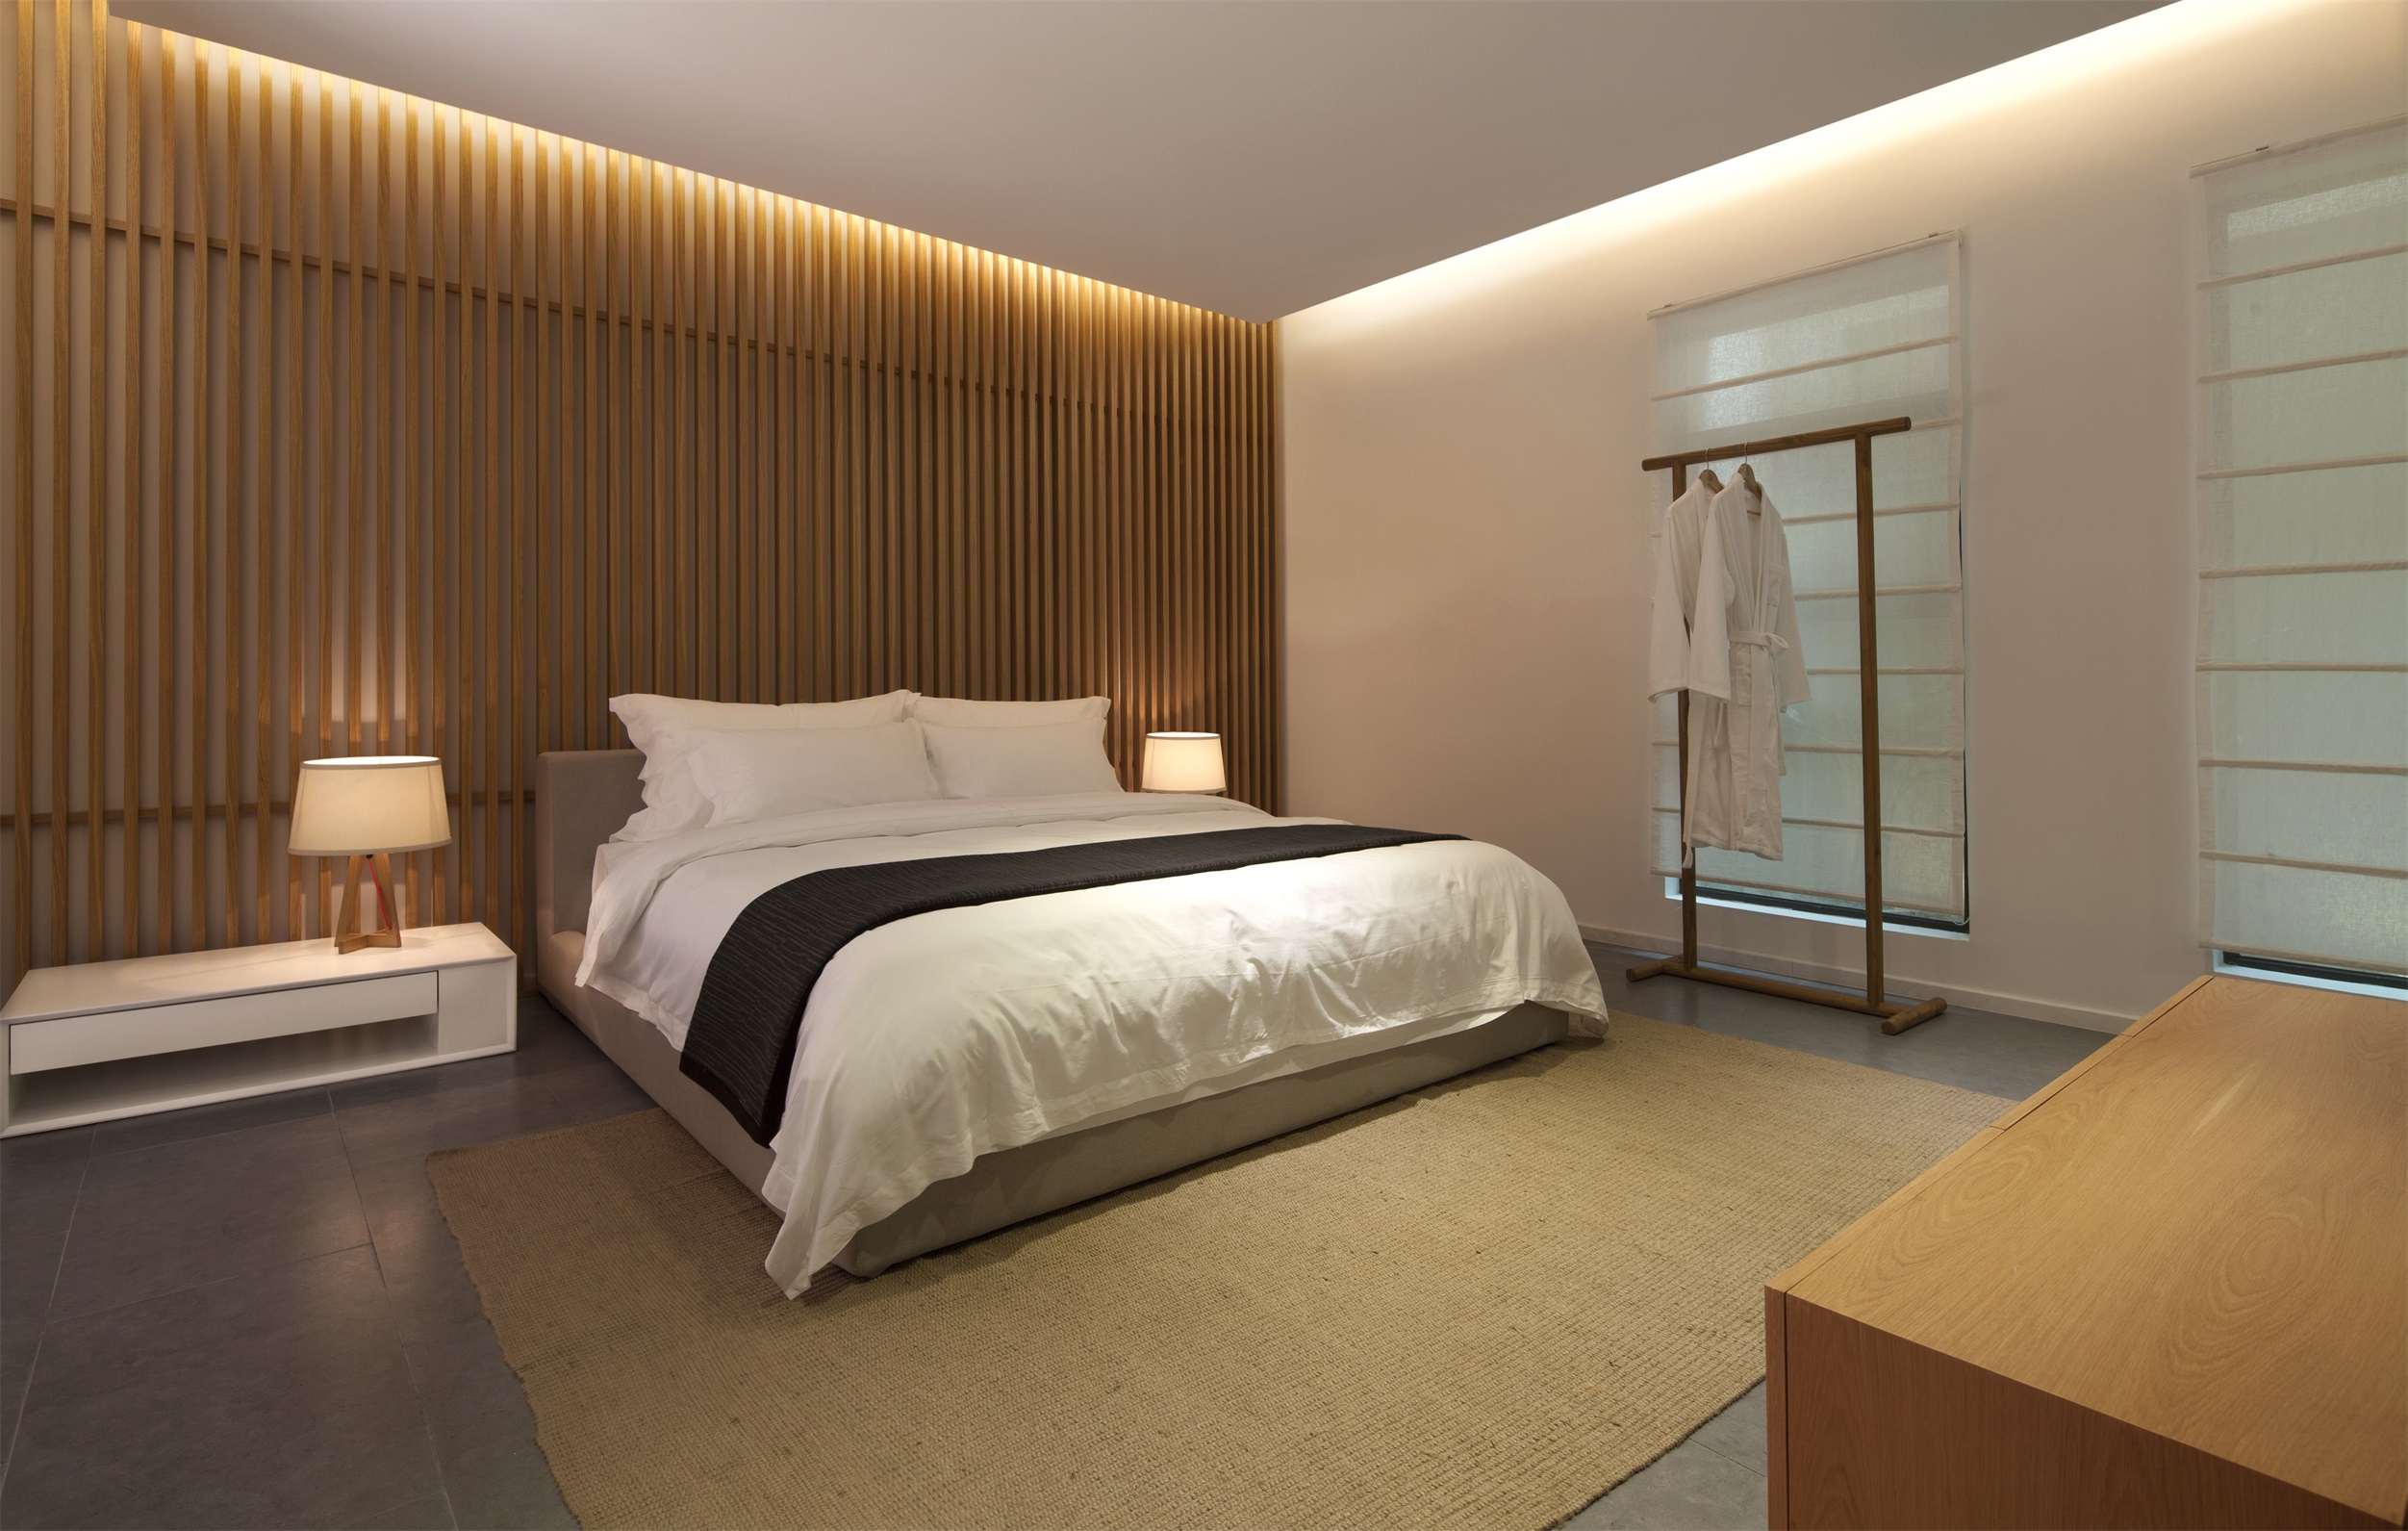 设计师利用木质元素组成背景，搭配白色床品，让房间充满温馨色彩。